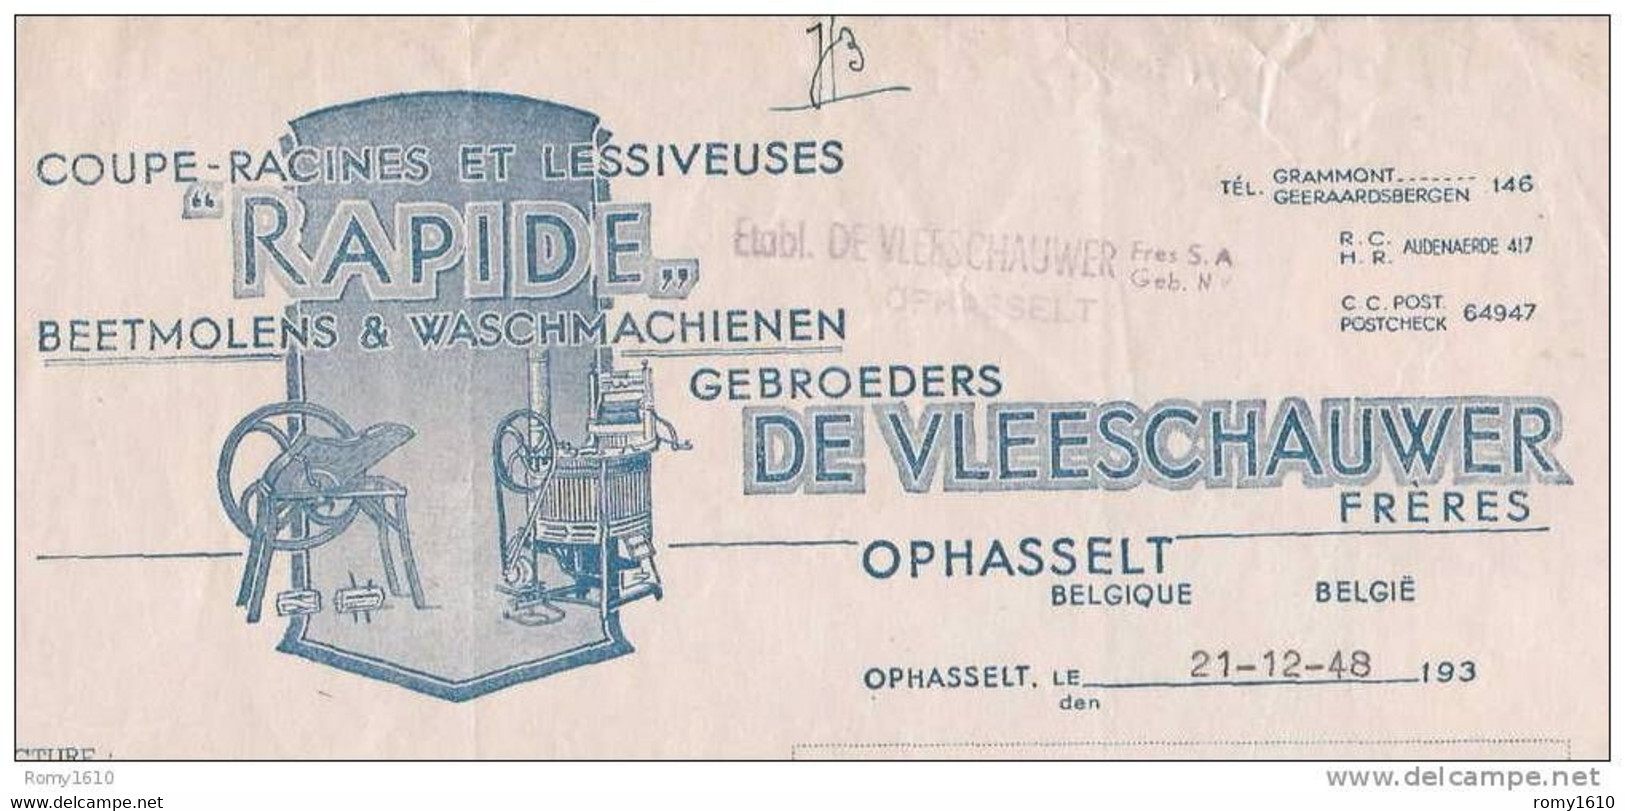 OPHASSELT - Superbe Facture Des Etablissements De Vleeschauwer - Coupe-Racines, Lessiveuses (1948) - Landbouw